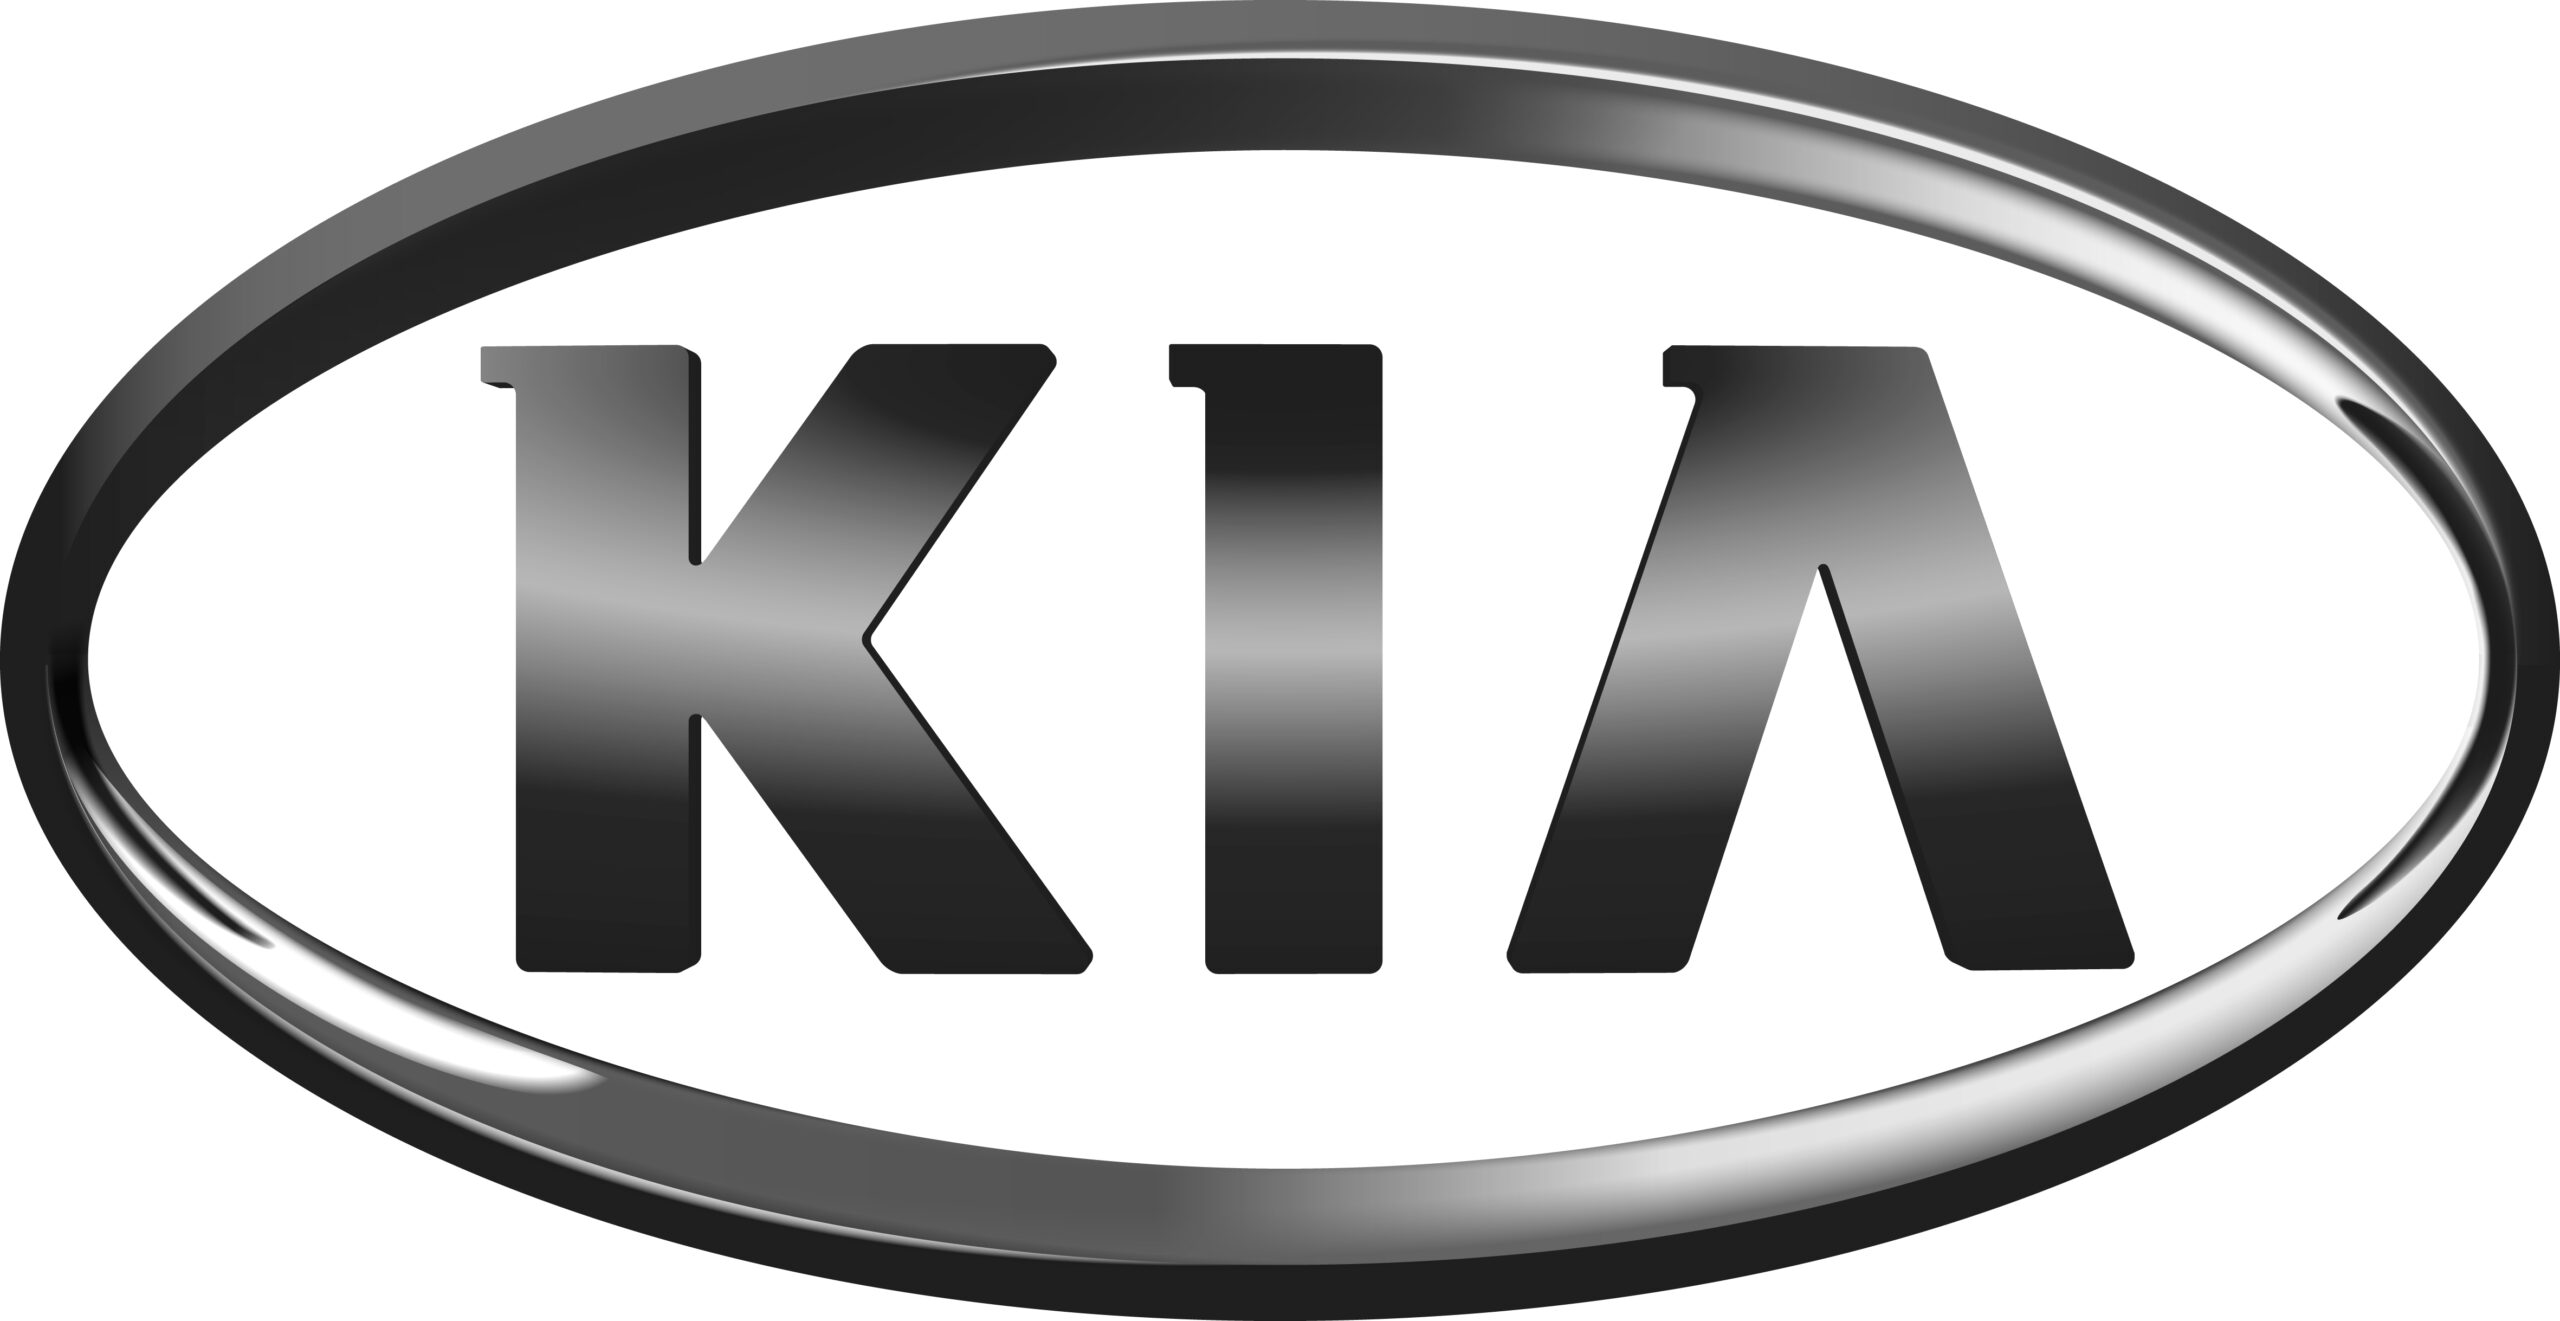 Evolving Identity The Story Behind Kia New Car Logo